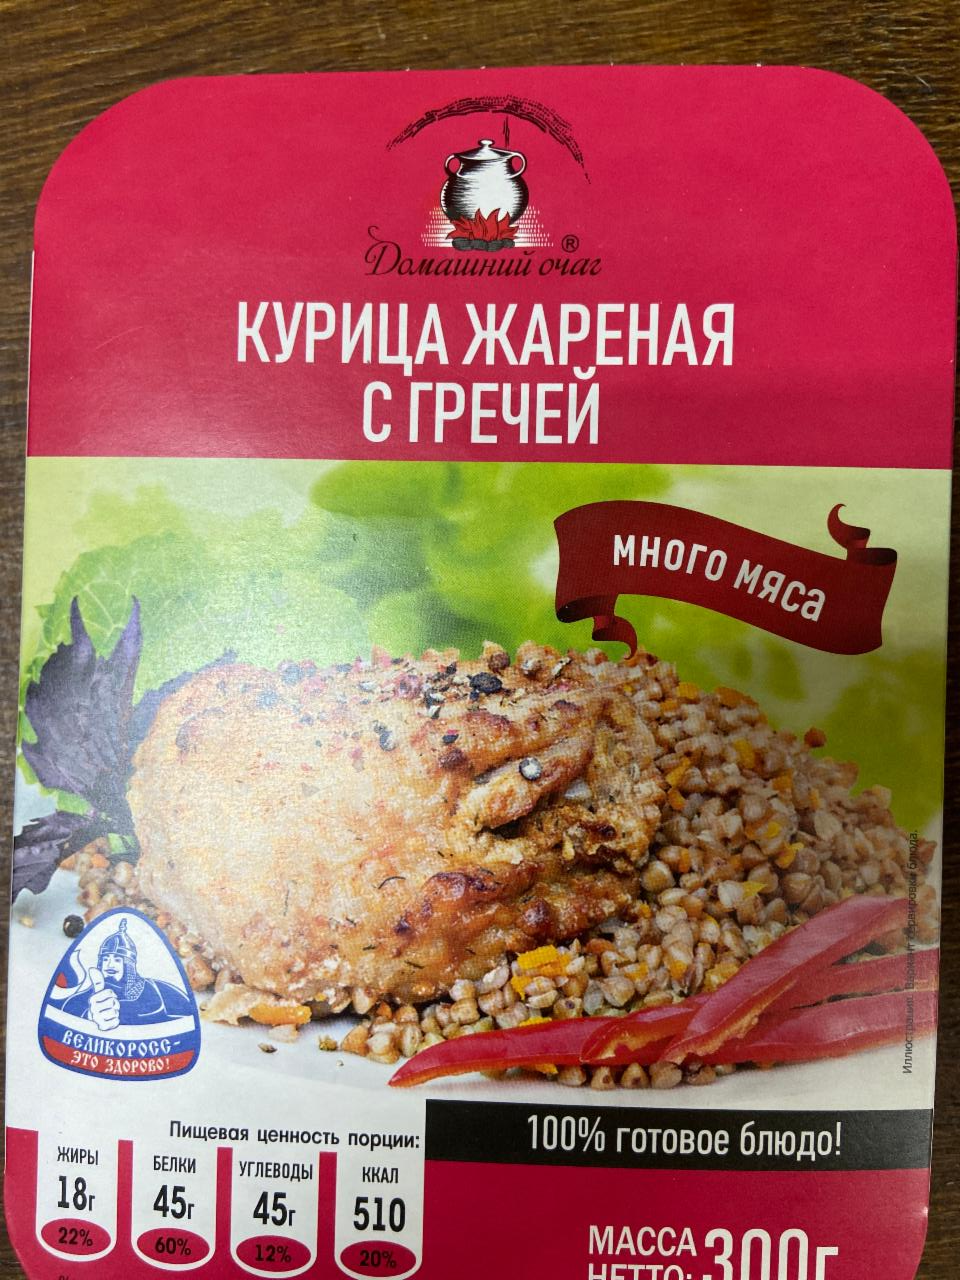 Фото - Обед курица жареная с гречей Домашний очаг